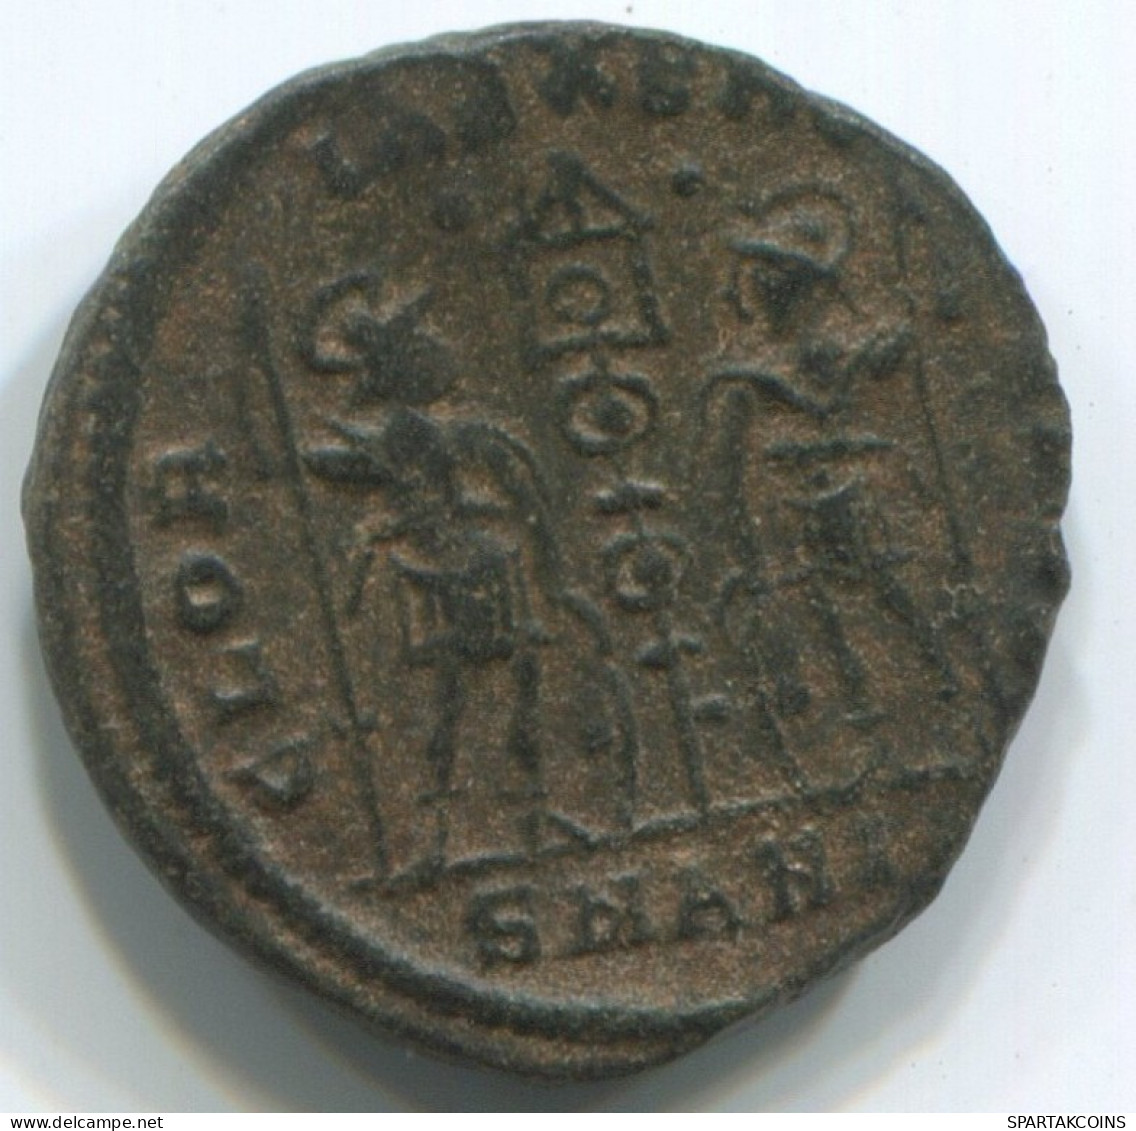 LATE ROMAN IMPERIO Moneda Antiguo Auténtico Roman Moneda 1.5g/16mm #ANT2431.14.E.A - La Fin De L'Empire (363-476)